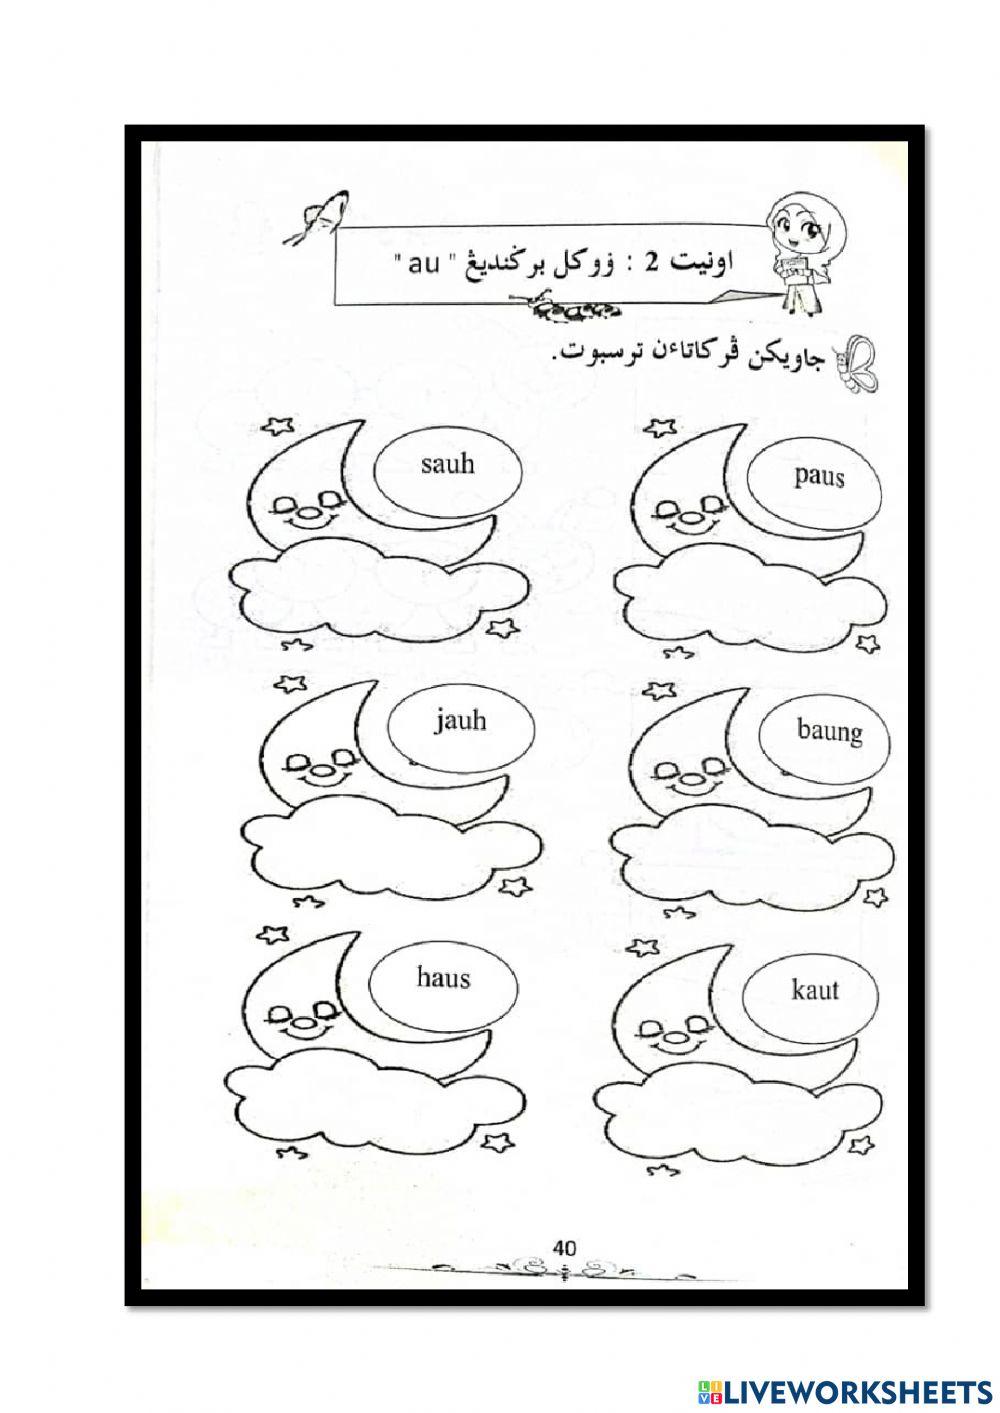 Vokal berganding dengan hamzah (au)